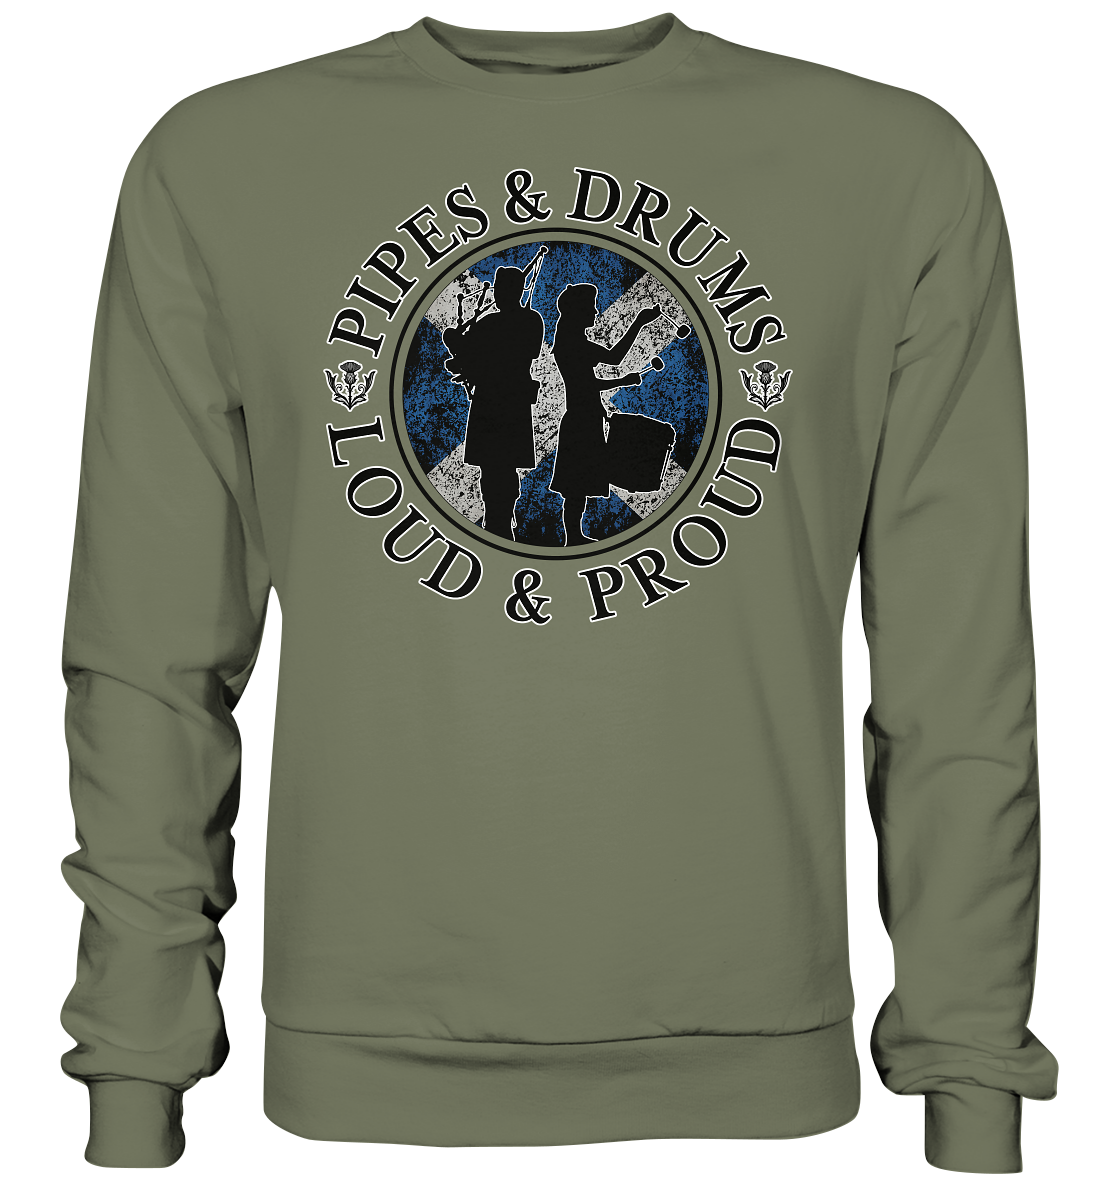 Pipes & Drums "Loud & Proud" - Premium Sweatshirt